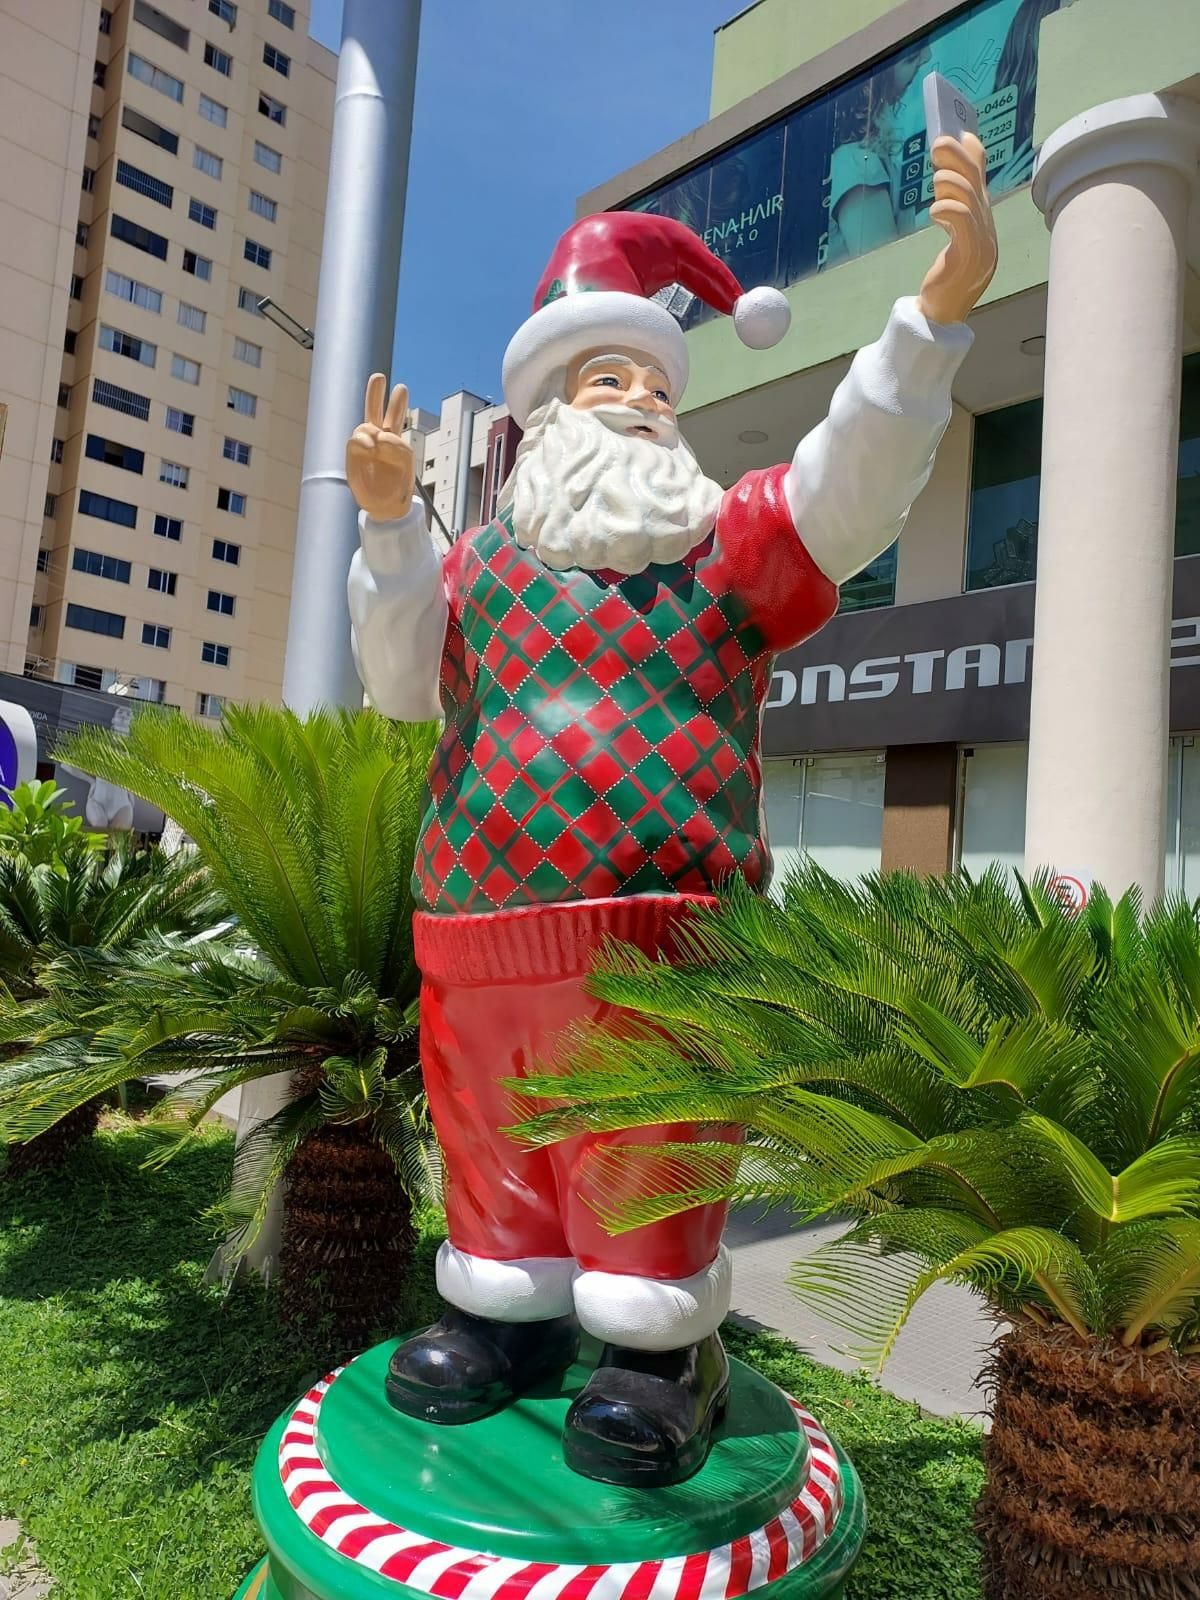 Chegada do Papai Noel movimenta shoppings de SG e Niterói